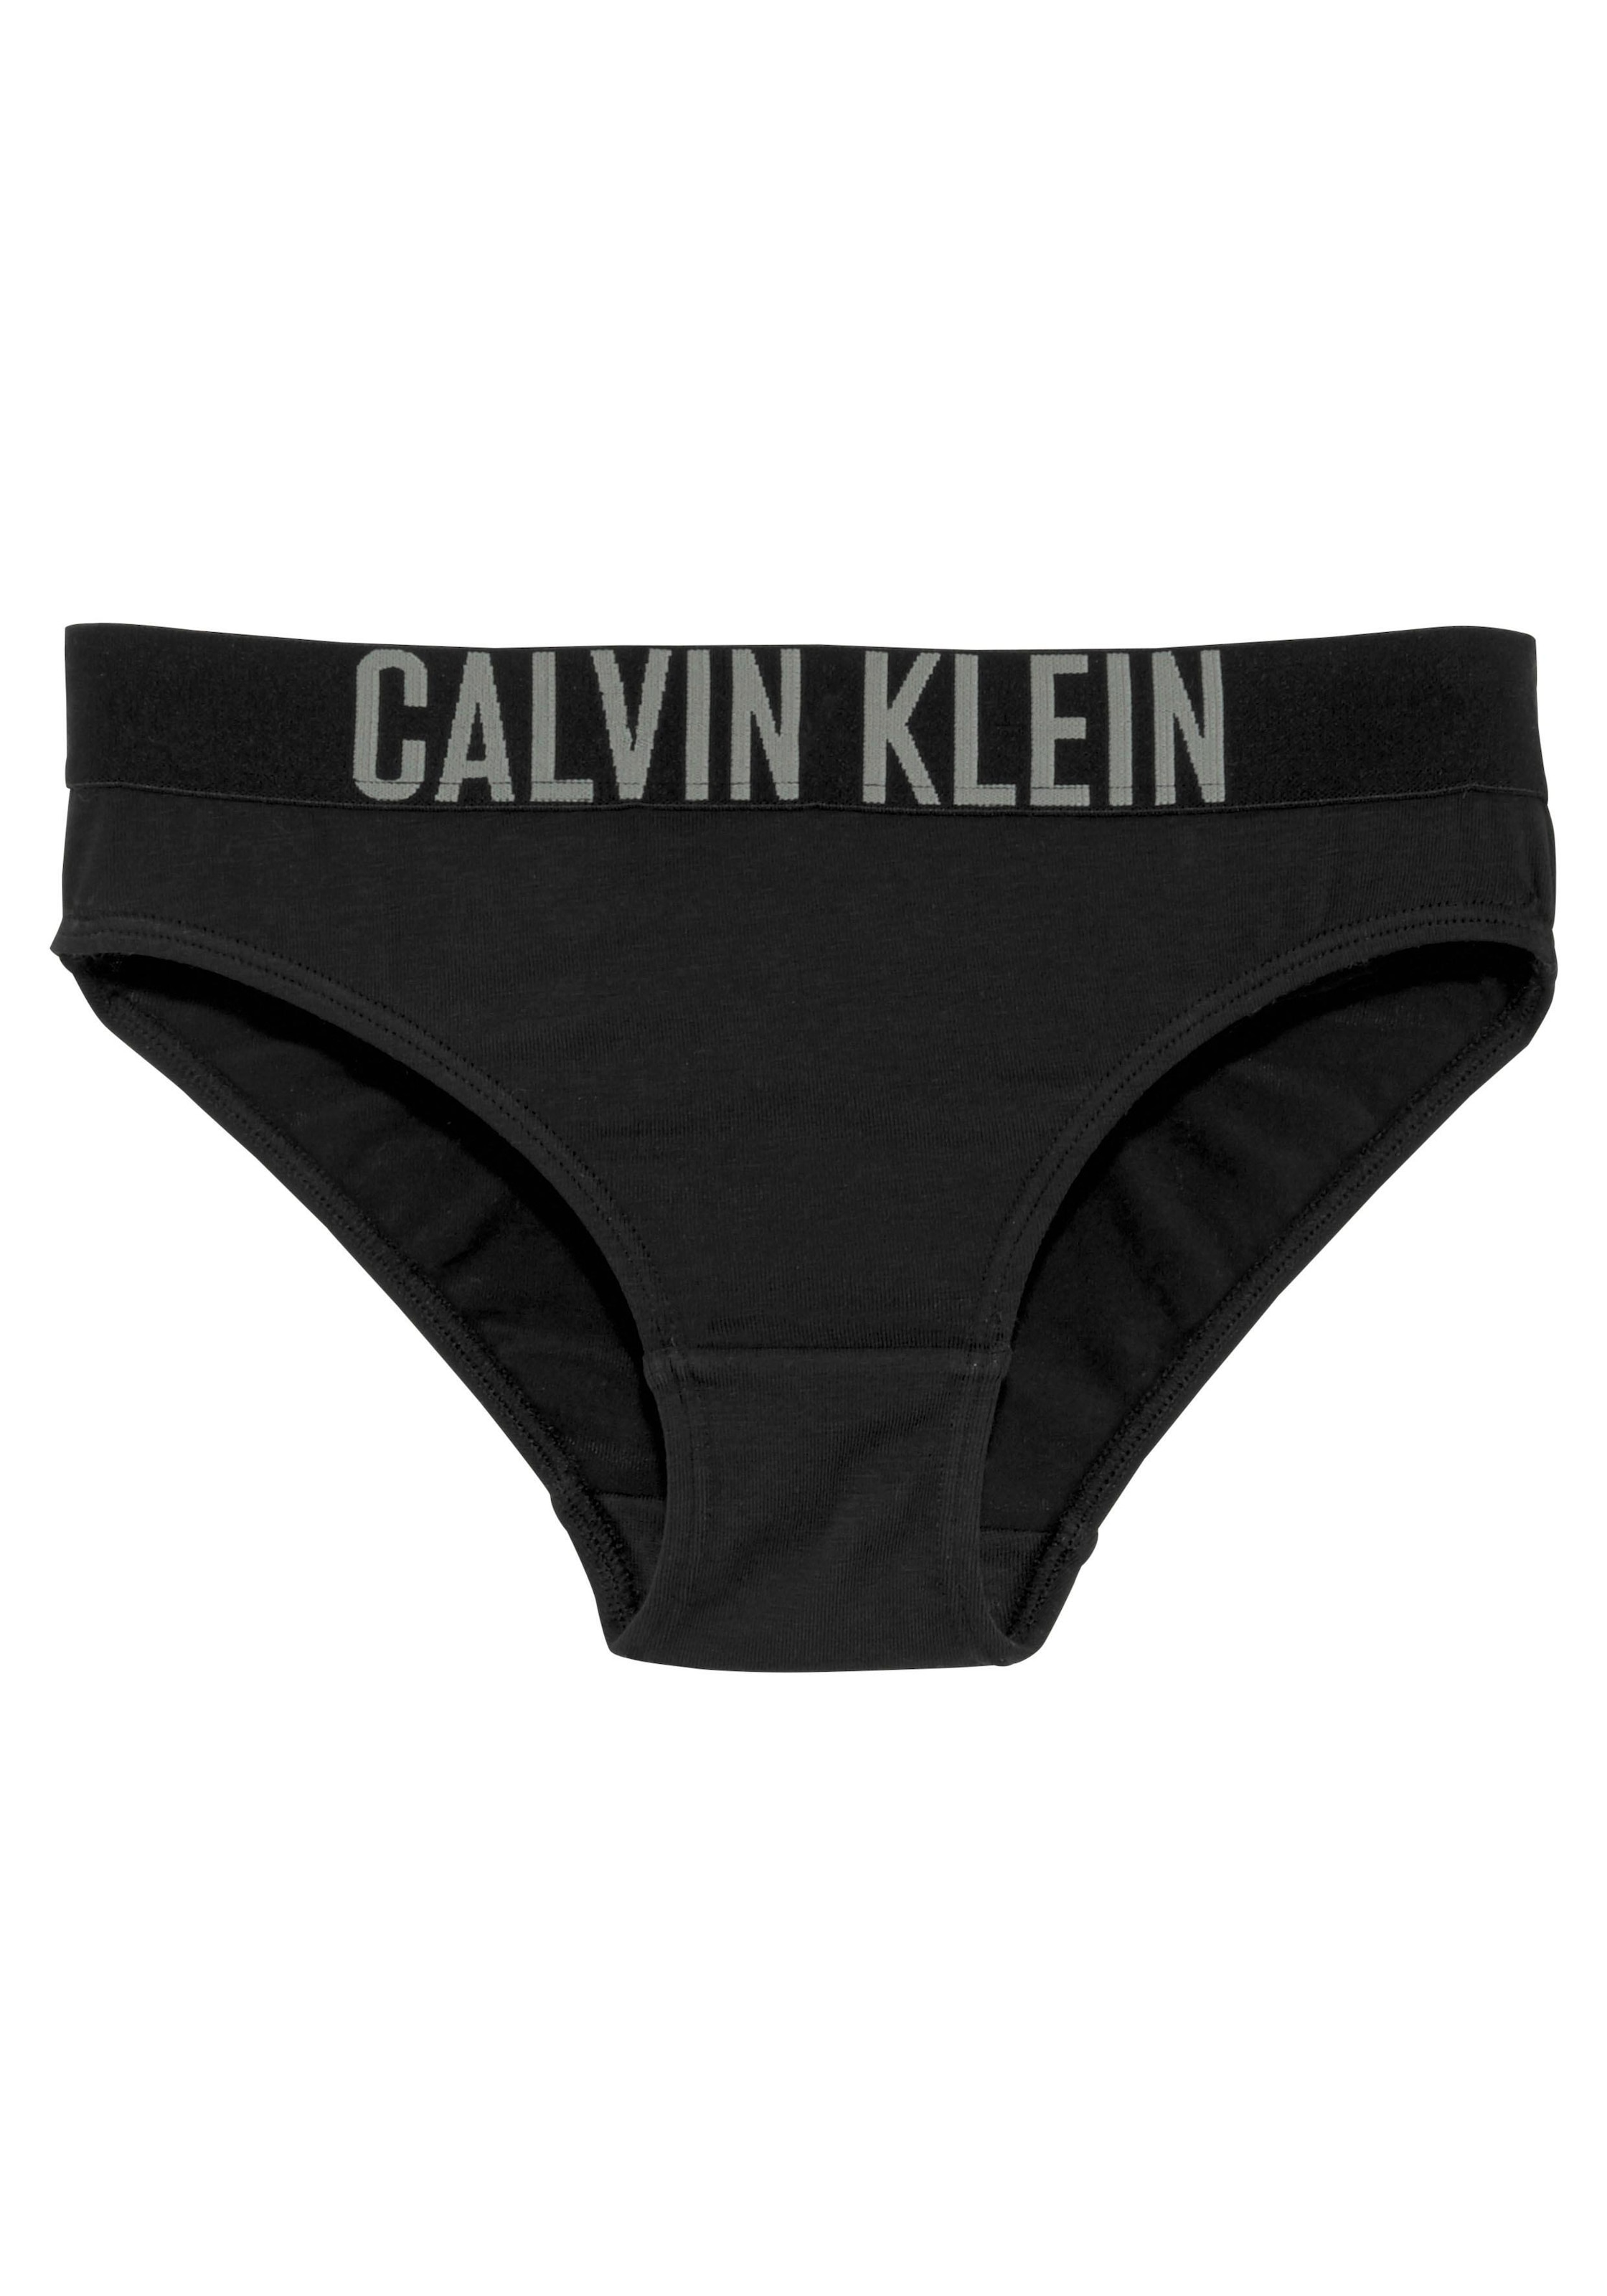 Calvin Klein Underwear Bikinislip »Intenese Power«, (2 St.), Kinder Kids Junior MiniMe,für Mädchen